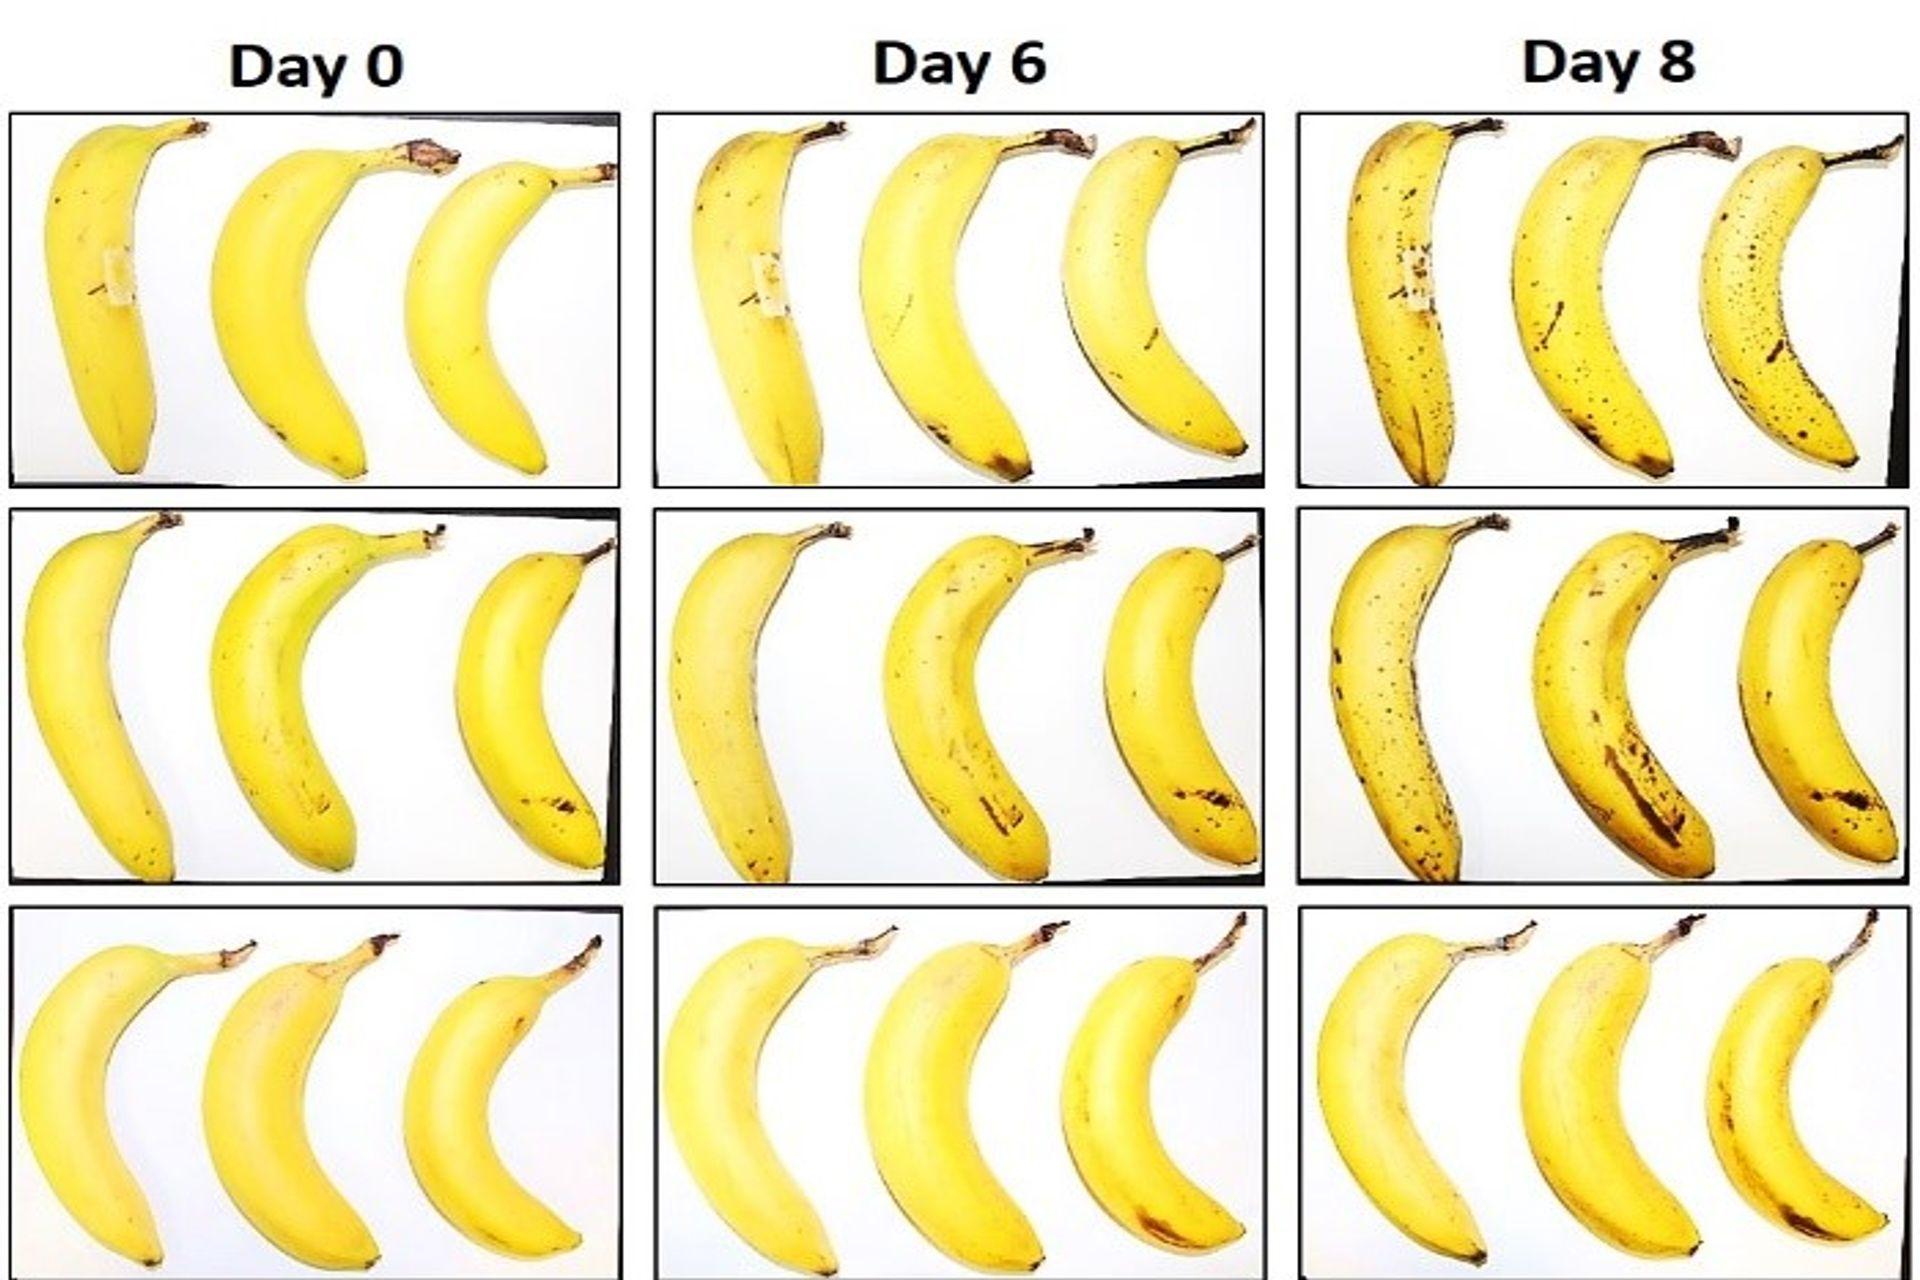 EMPA және Lidl Switzerland ұсынған үш банан нөлден, 6 және 8 күннен кейін талшықты целлюлоза орамасы бар және онсыз консервация сынағынан өтті.